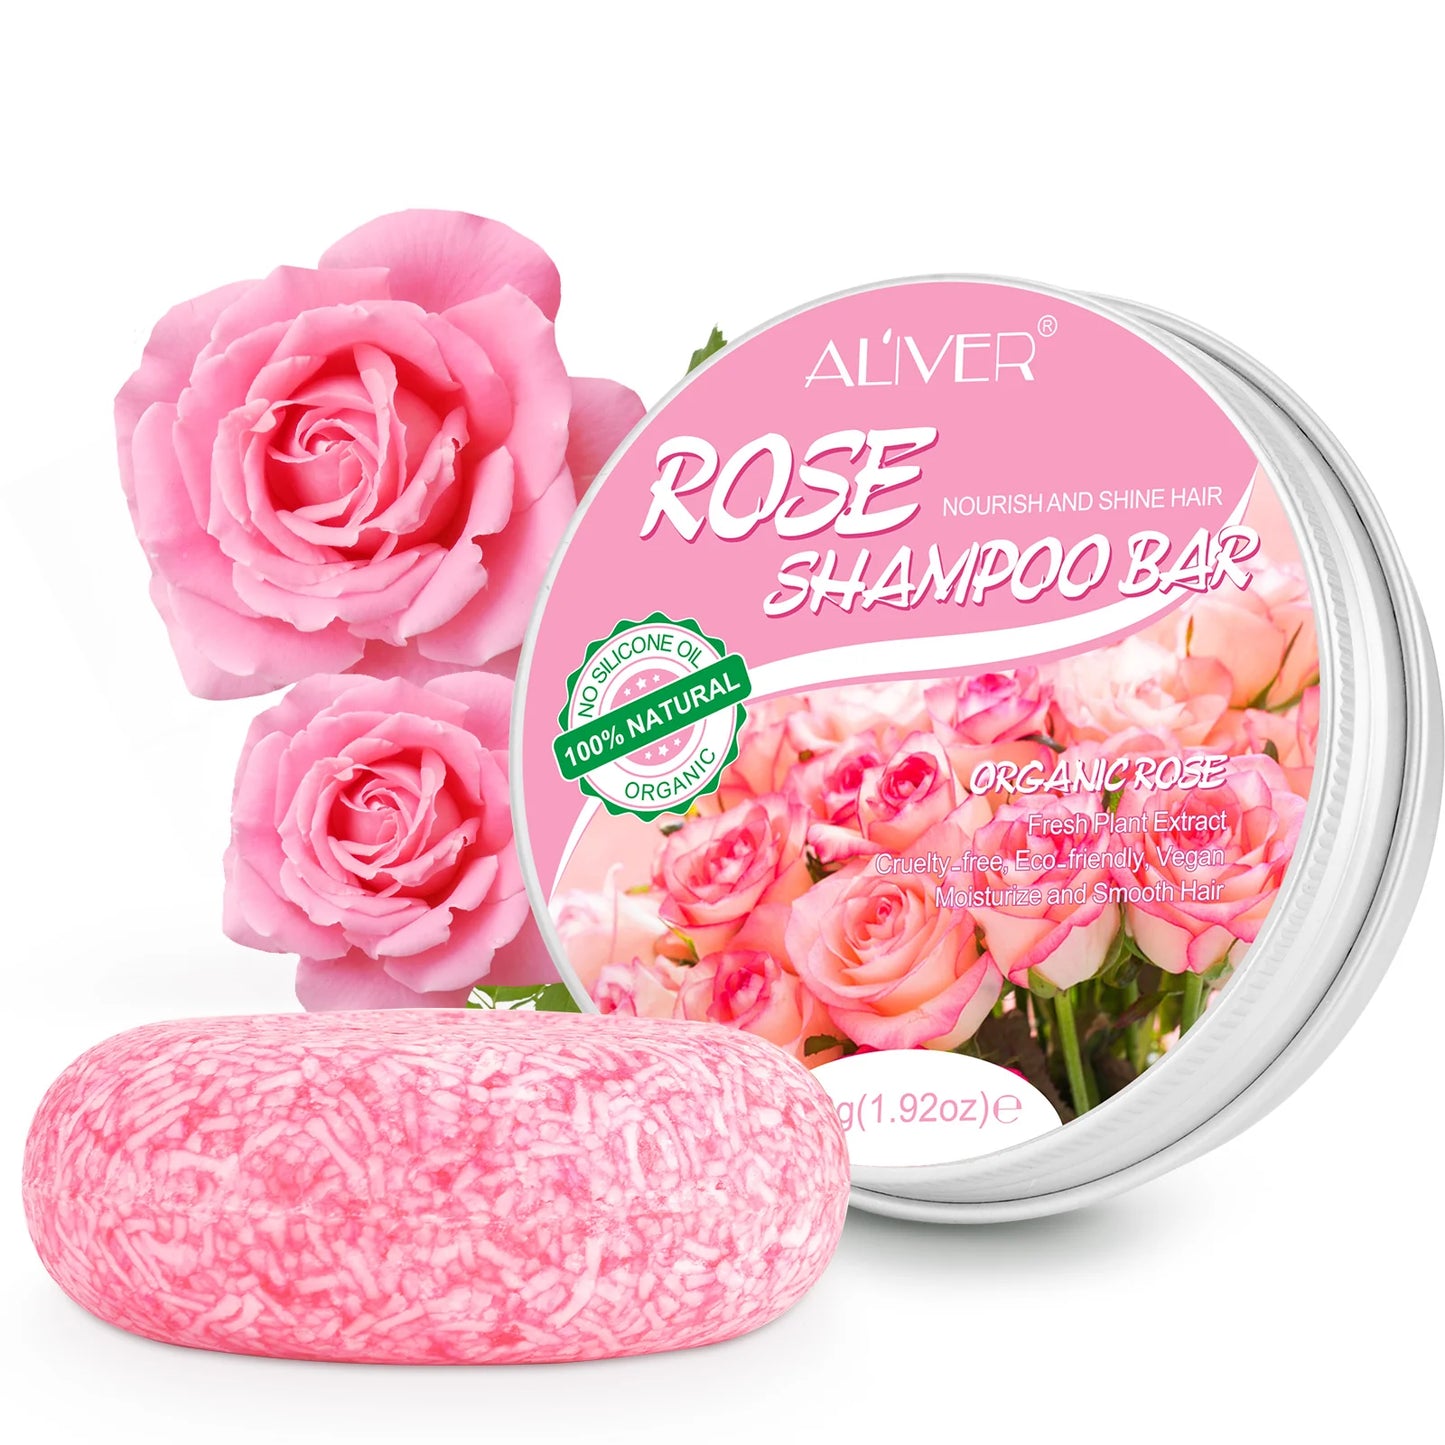 Rose Shampoo bar